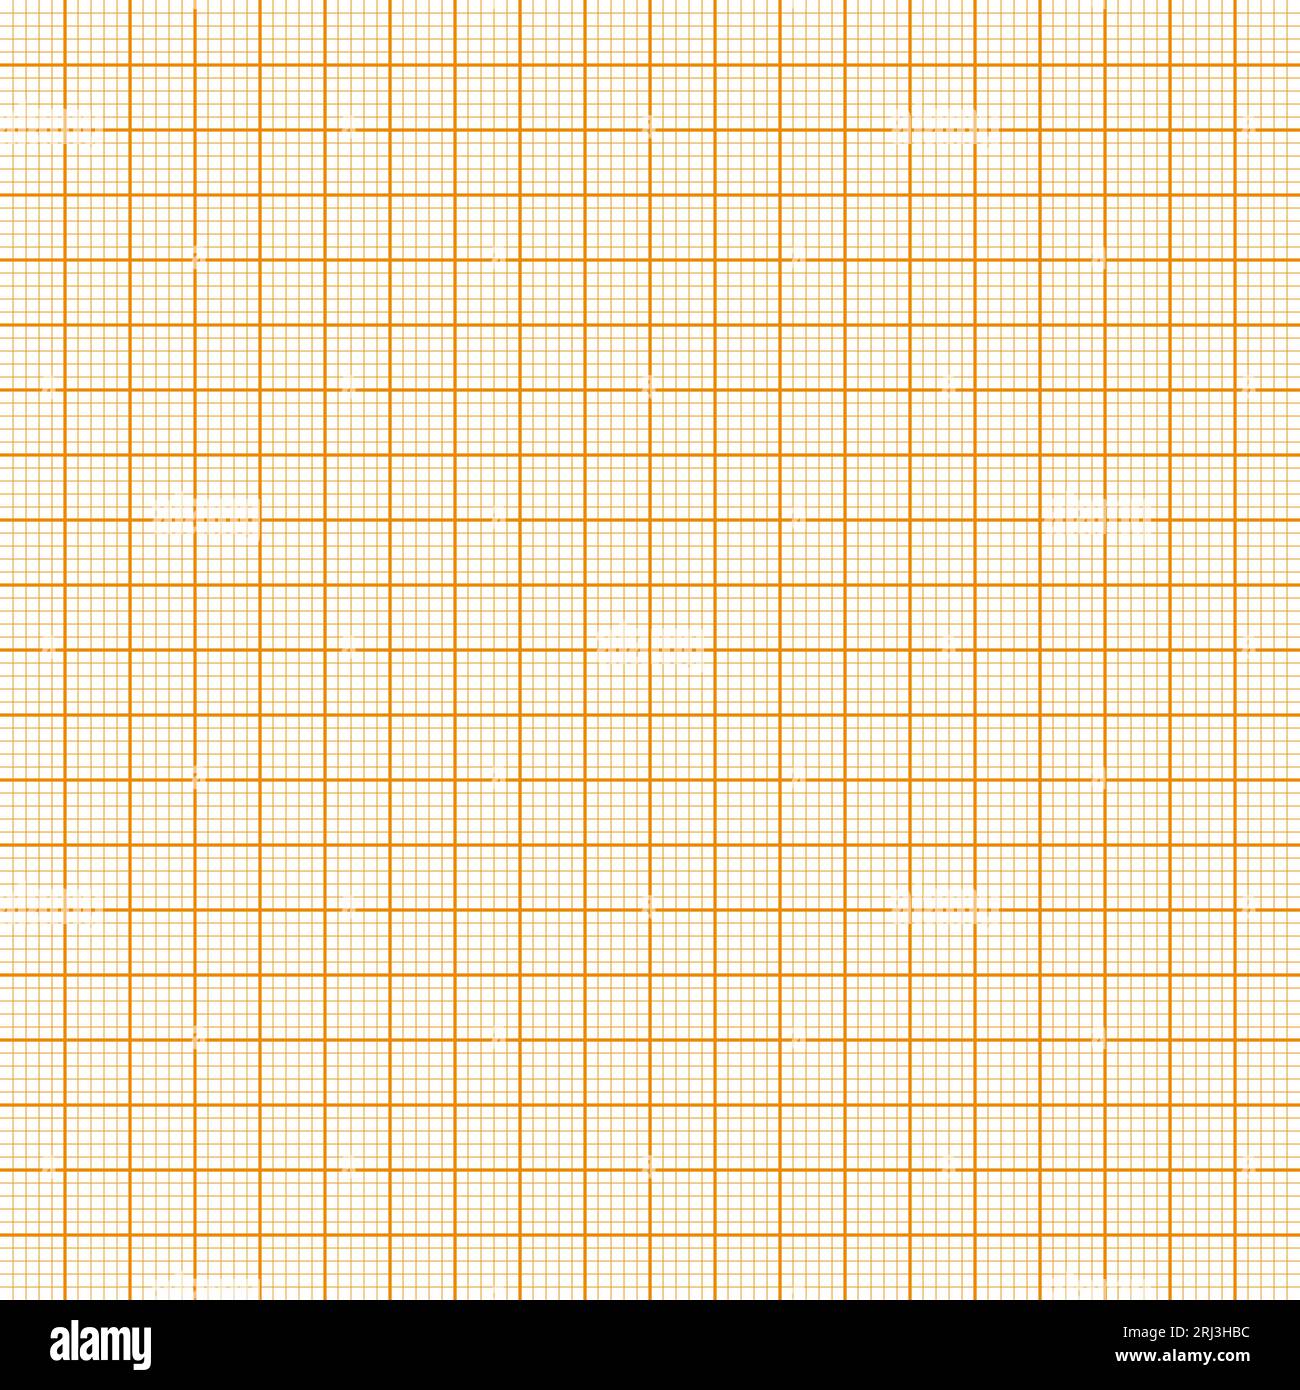 Feuille de papier millimétré avec grille. Texture de papier millimétrique,  motif géométrique. Blanc ligné orange pour le dessin, l'étude, l'ingénierie  technique ou l'échelle Image Vectorielle Stock - Alamy